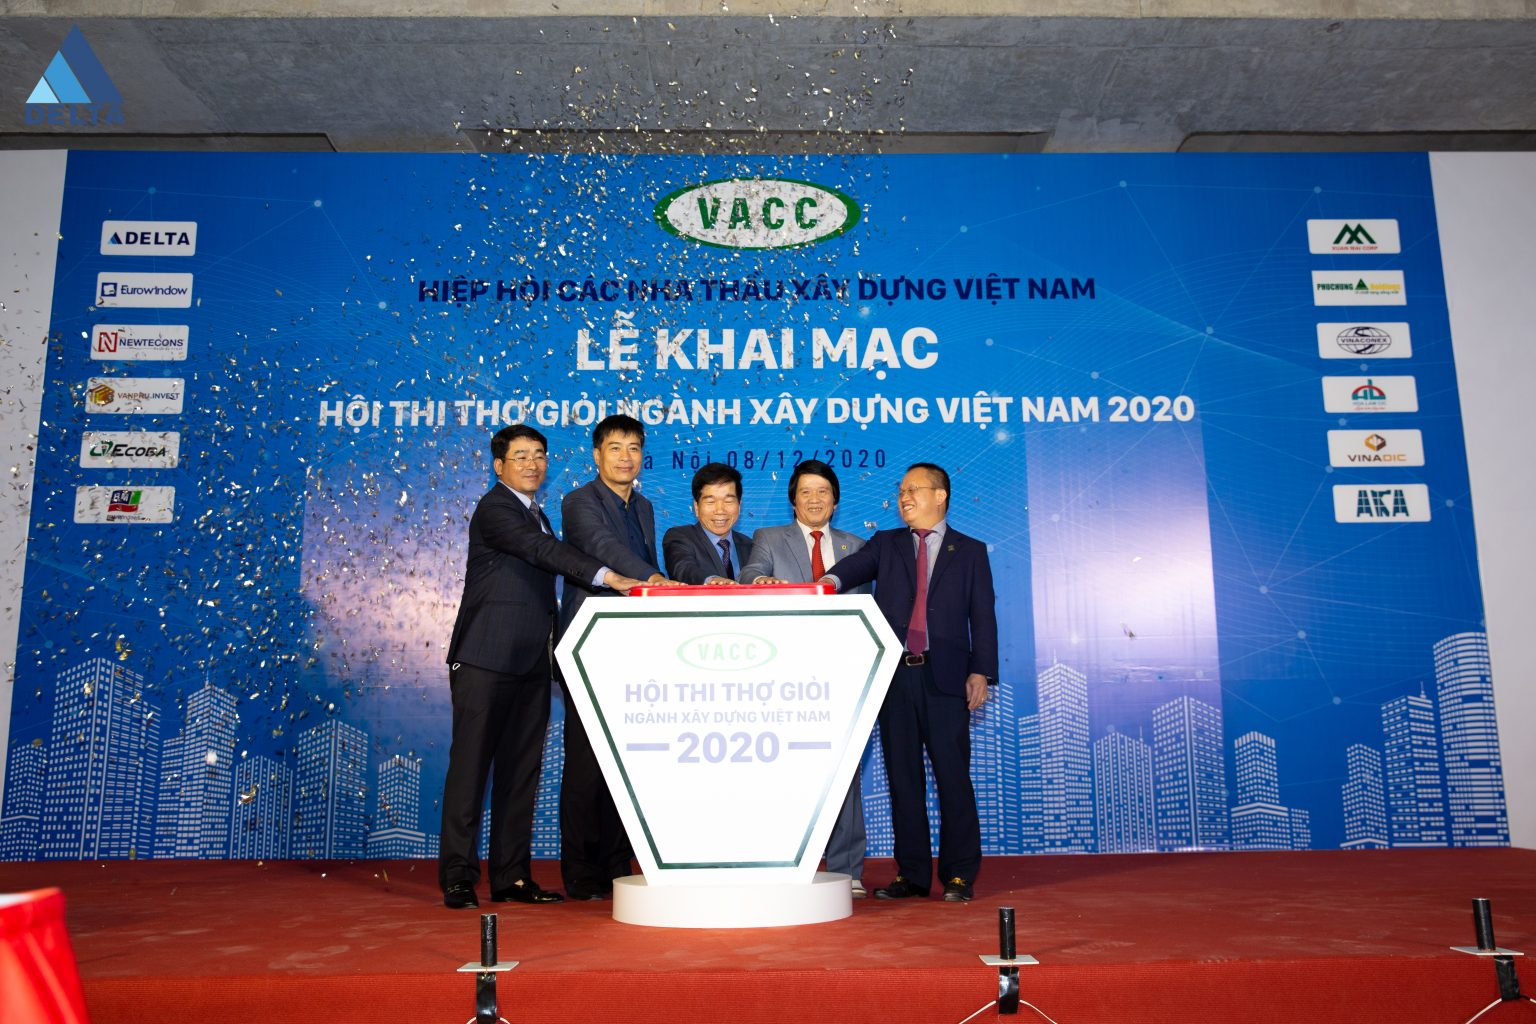 Ban tổ chức hội thi thực hiện nghi thức bấm nút khai mạc hội thi thợ giỏi ngành Xây dựng Việt Nam năm 2020